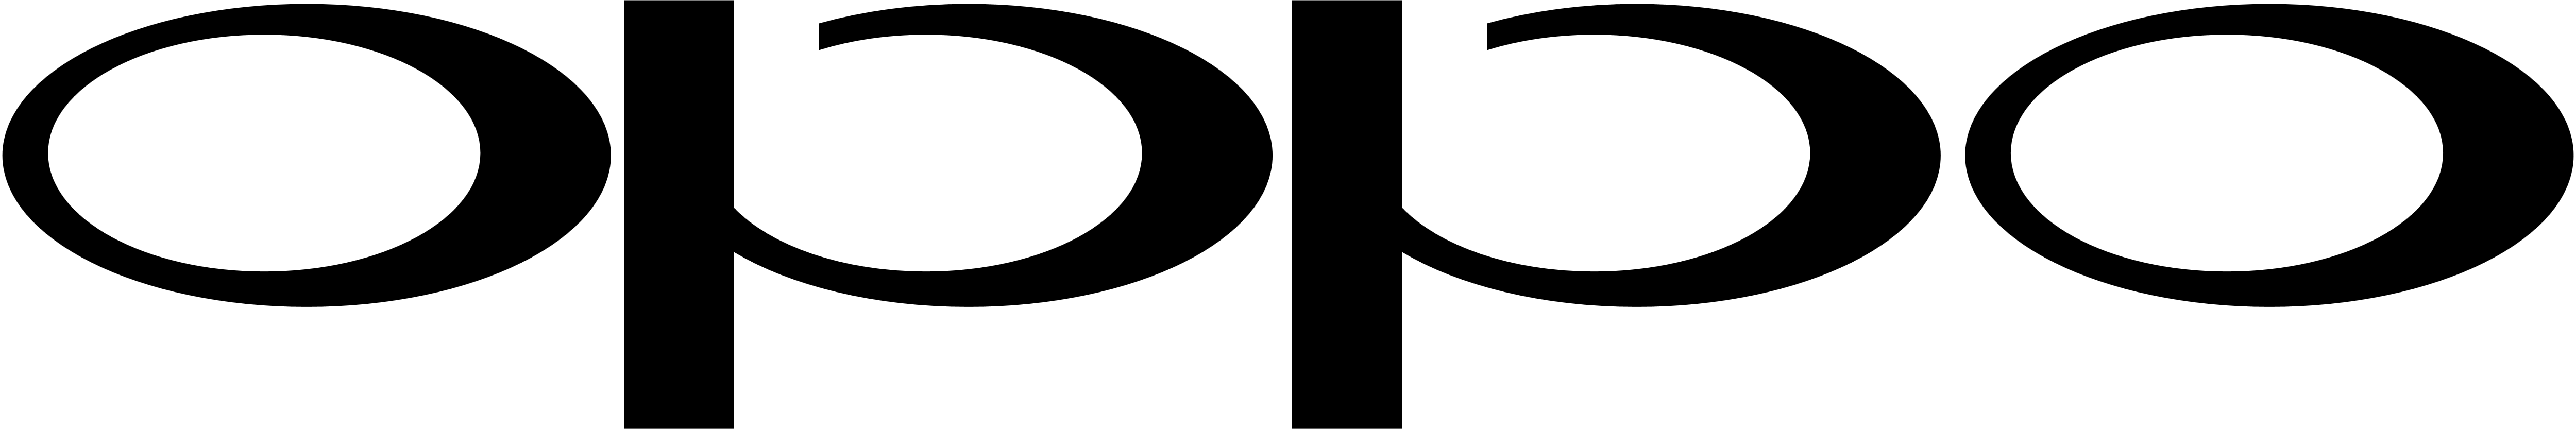 Oppo Logo - Oppo – Logos Download